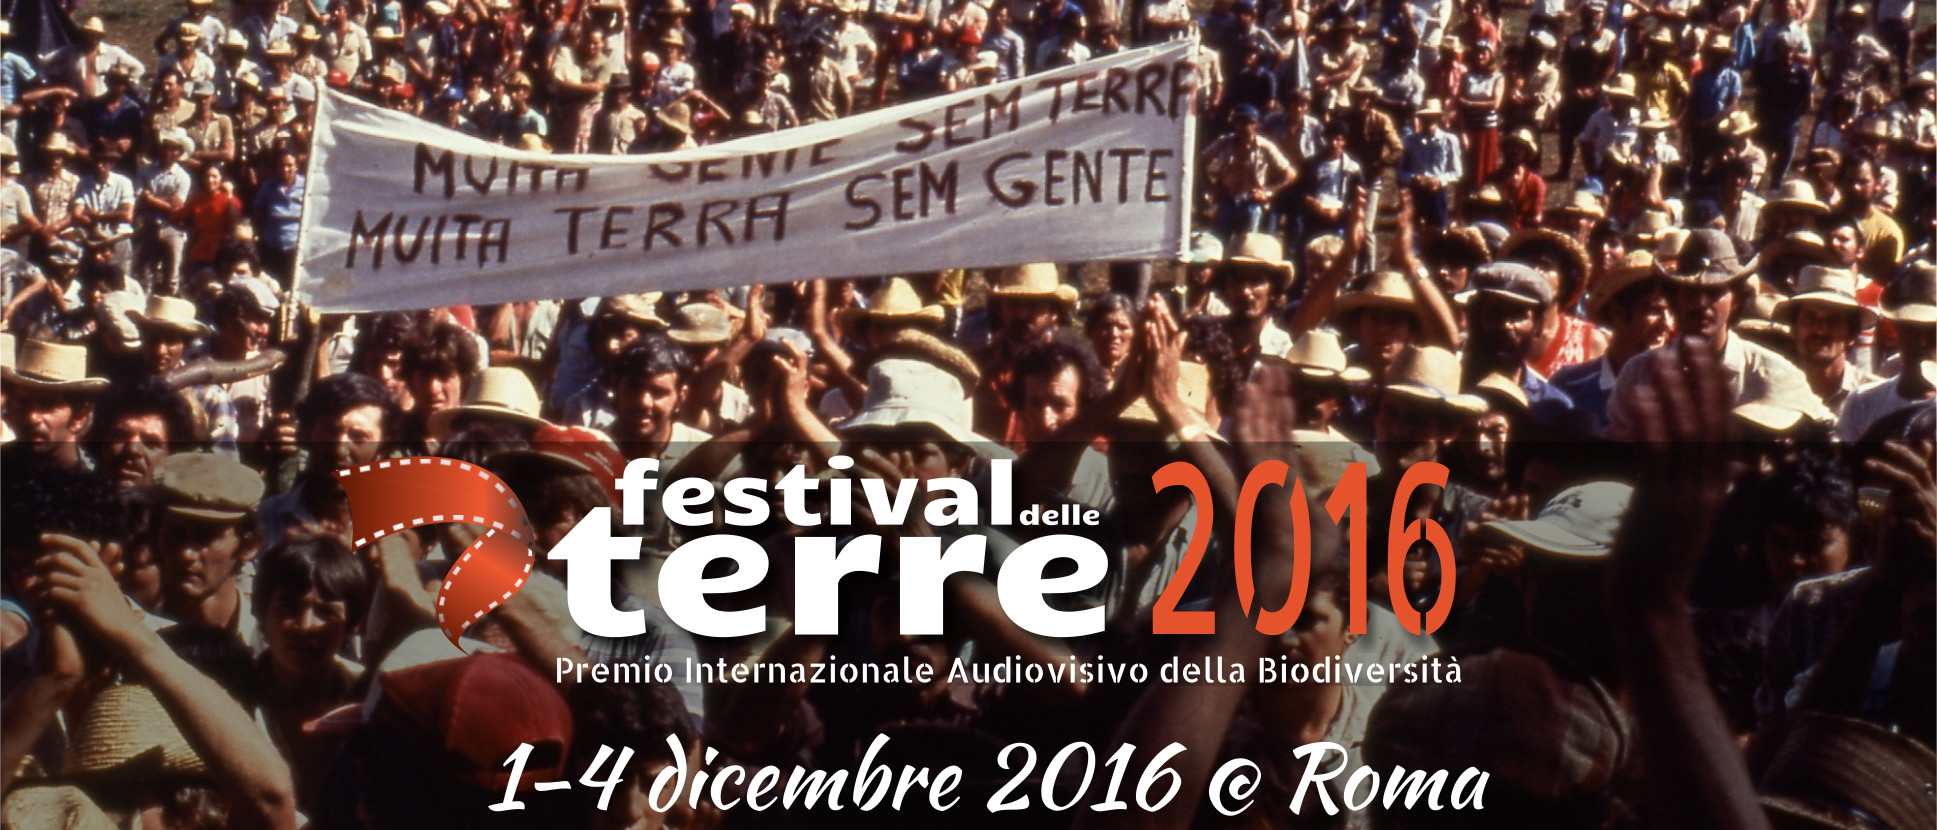 Festival delle Terre 2016 - XIII Edizione